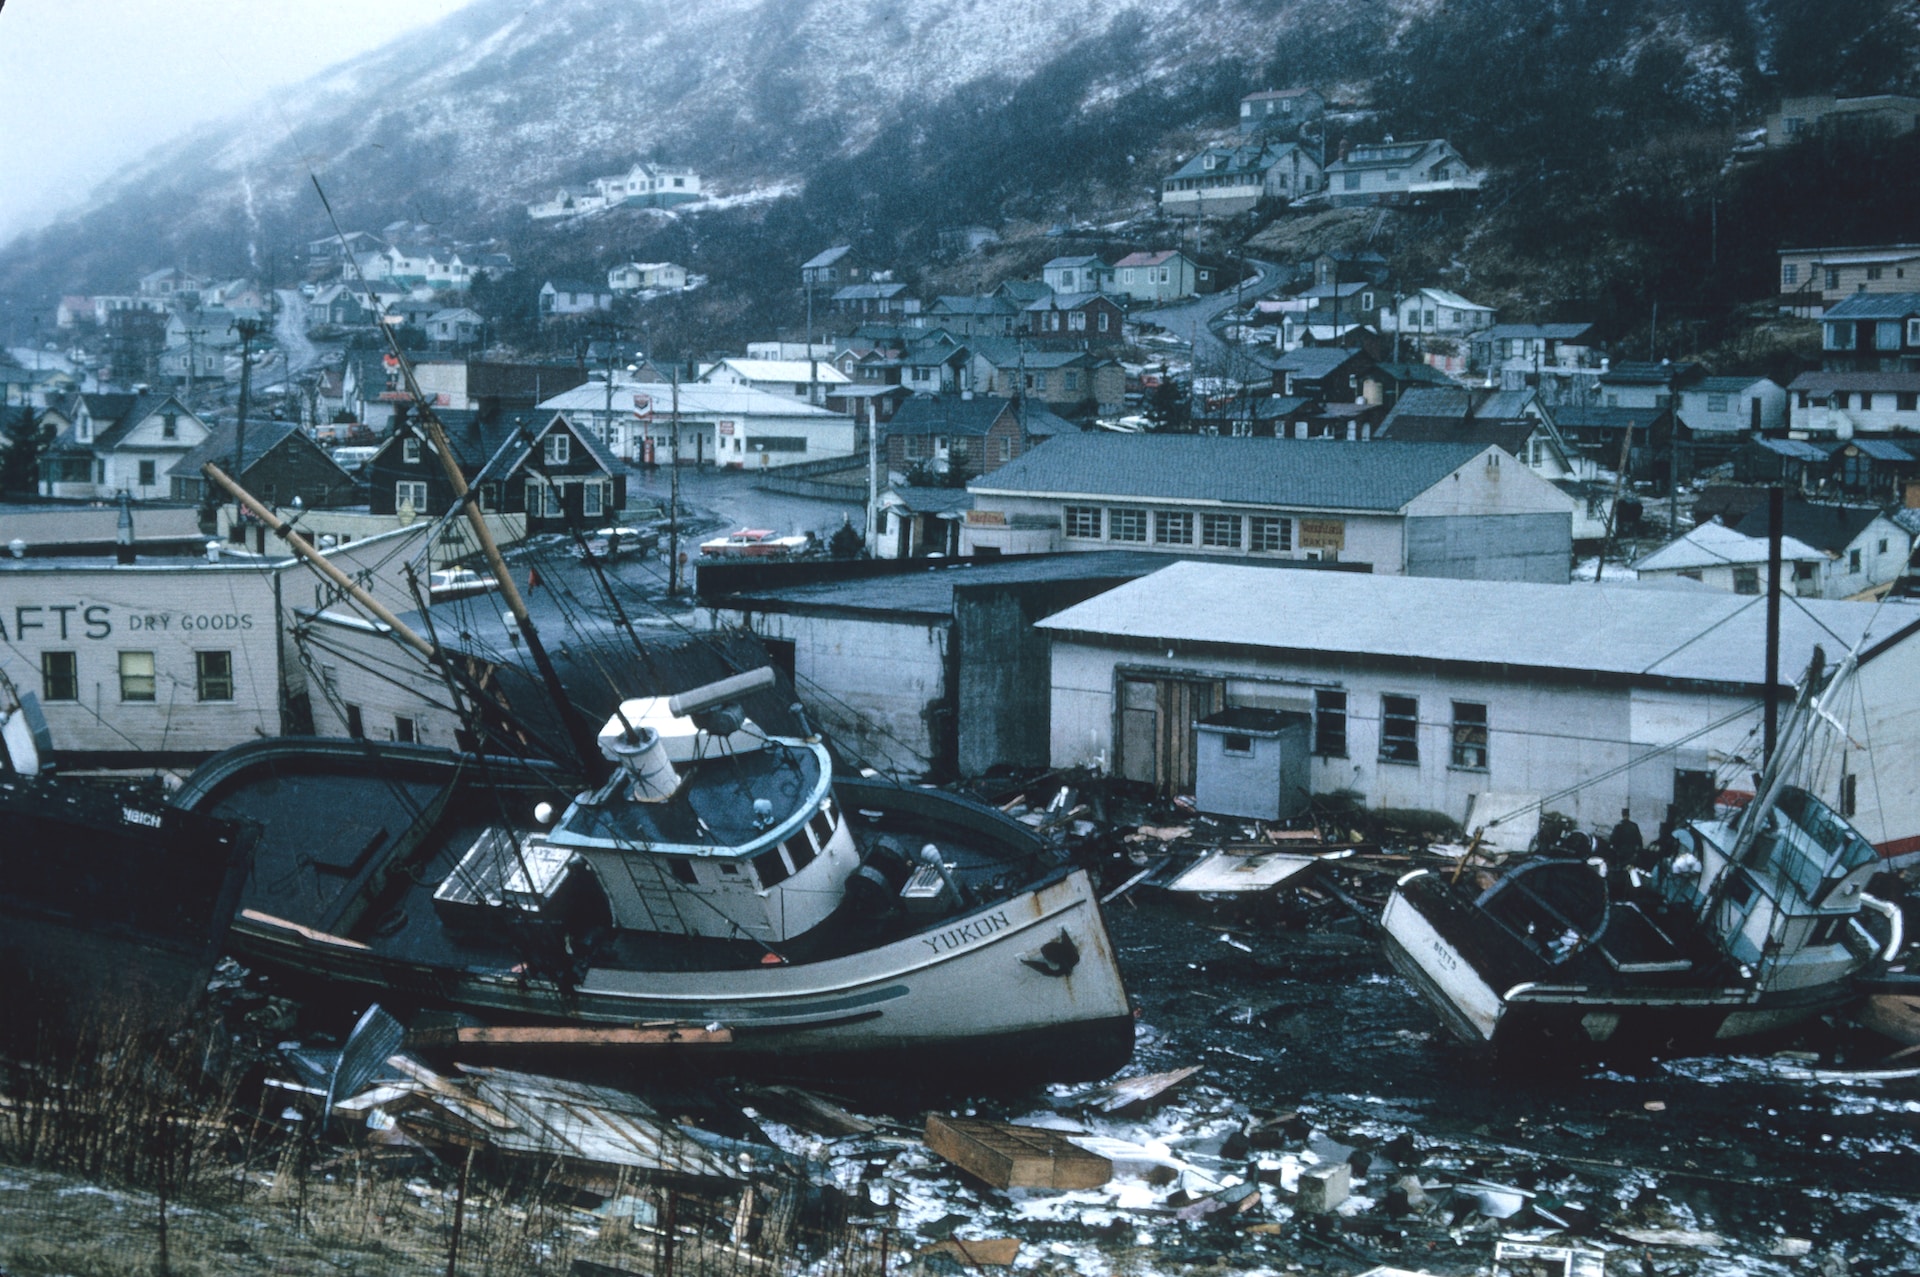 boats on land, storm damage